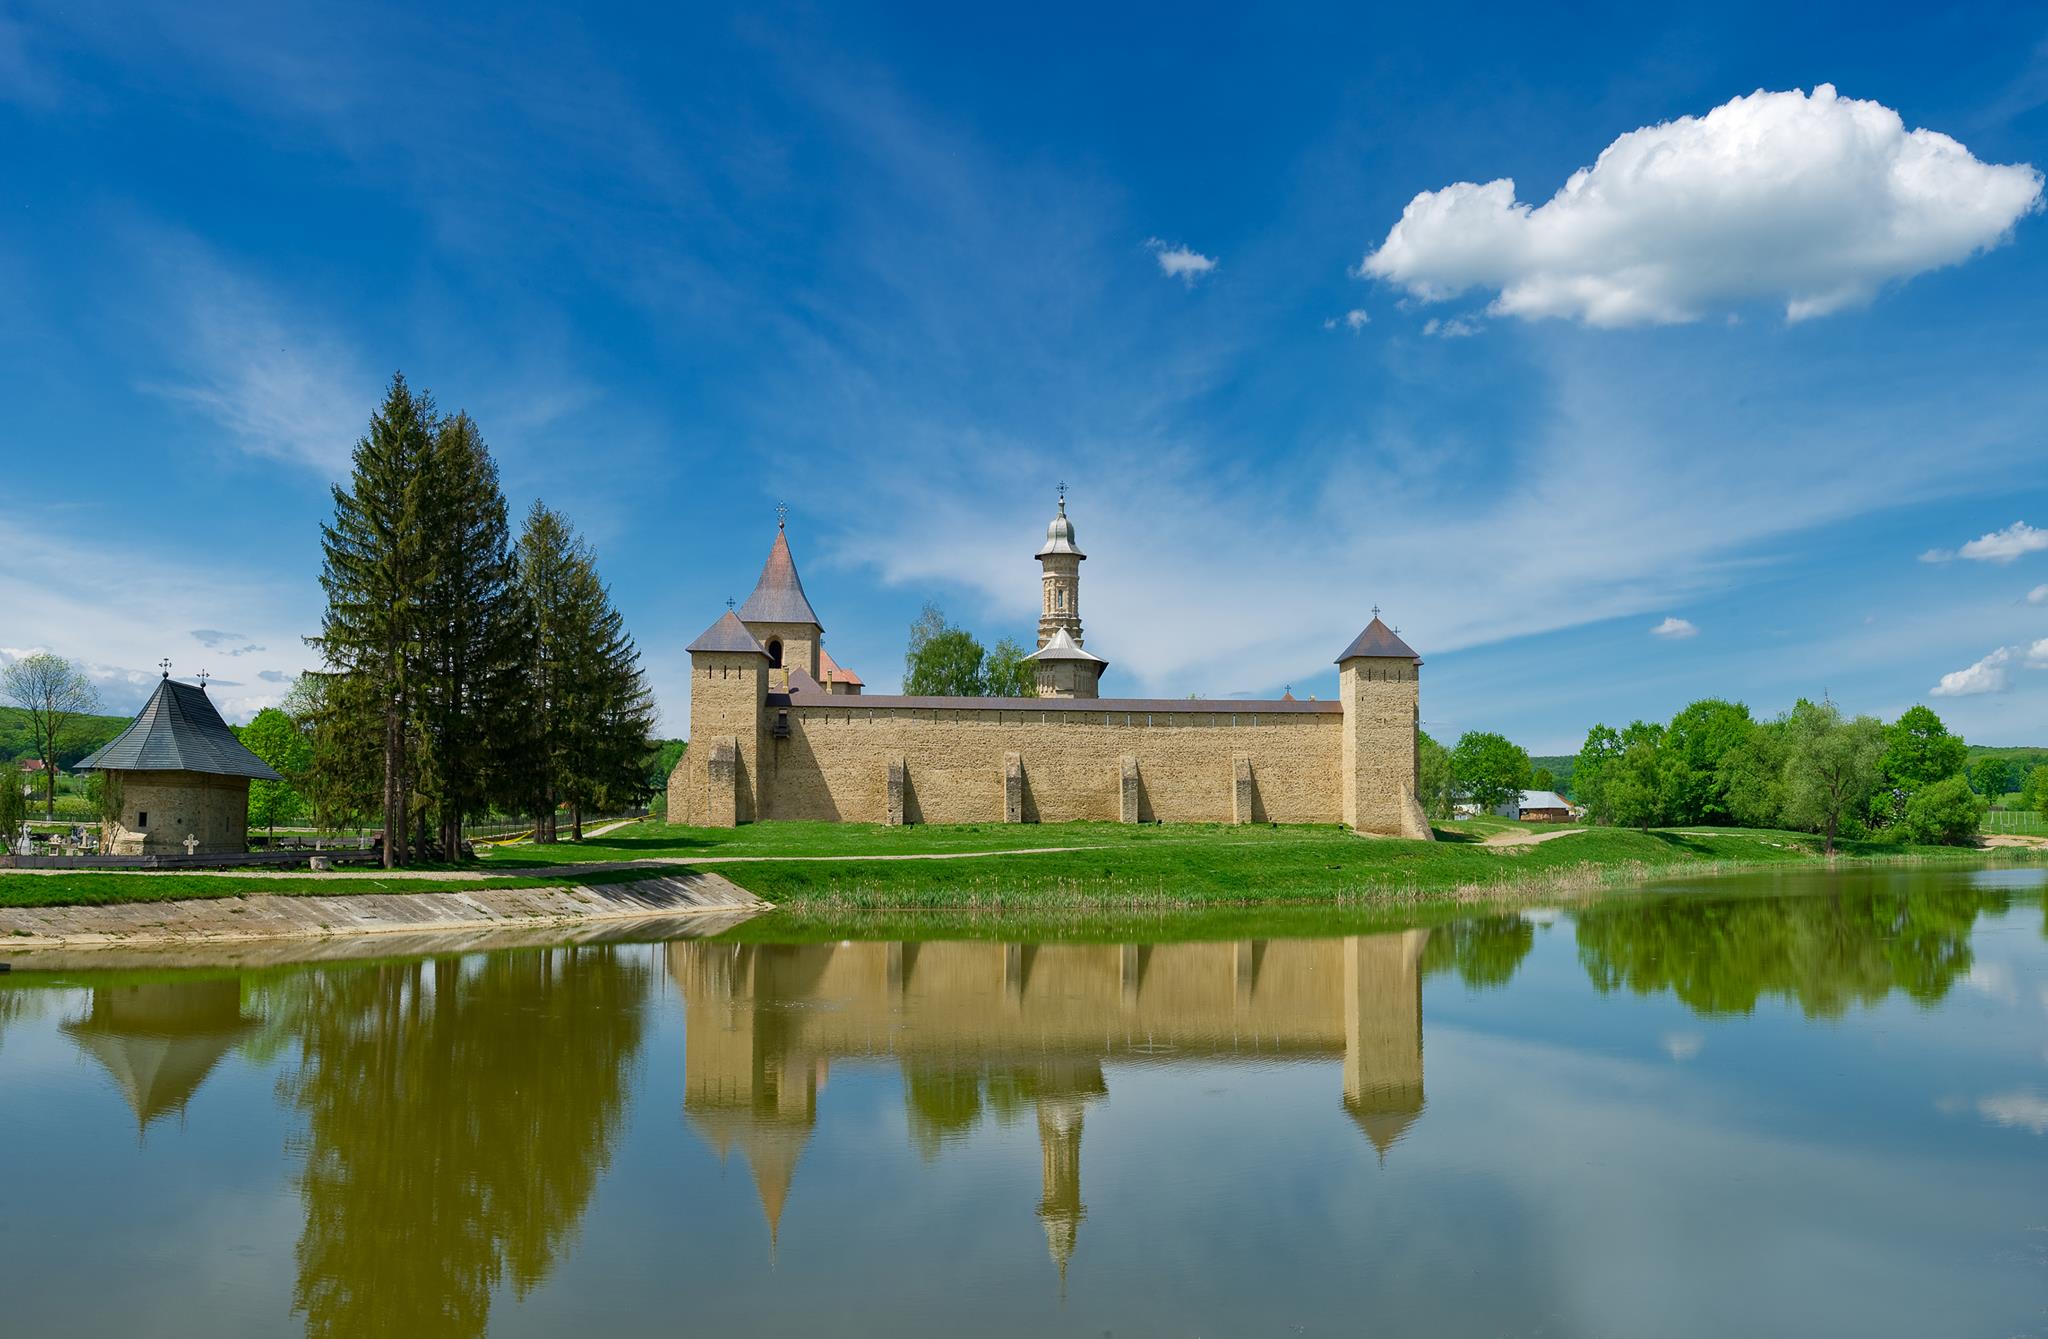 Ce legătură este între Adrian Porumboiu și mănăstirea Dragomirna